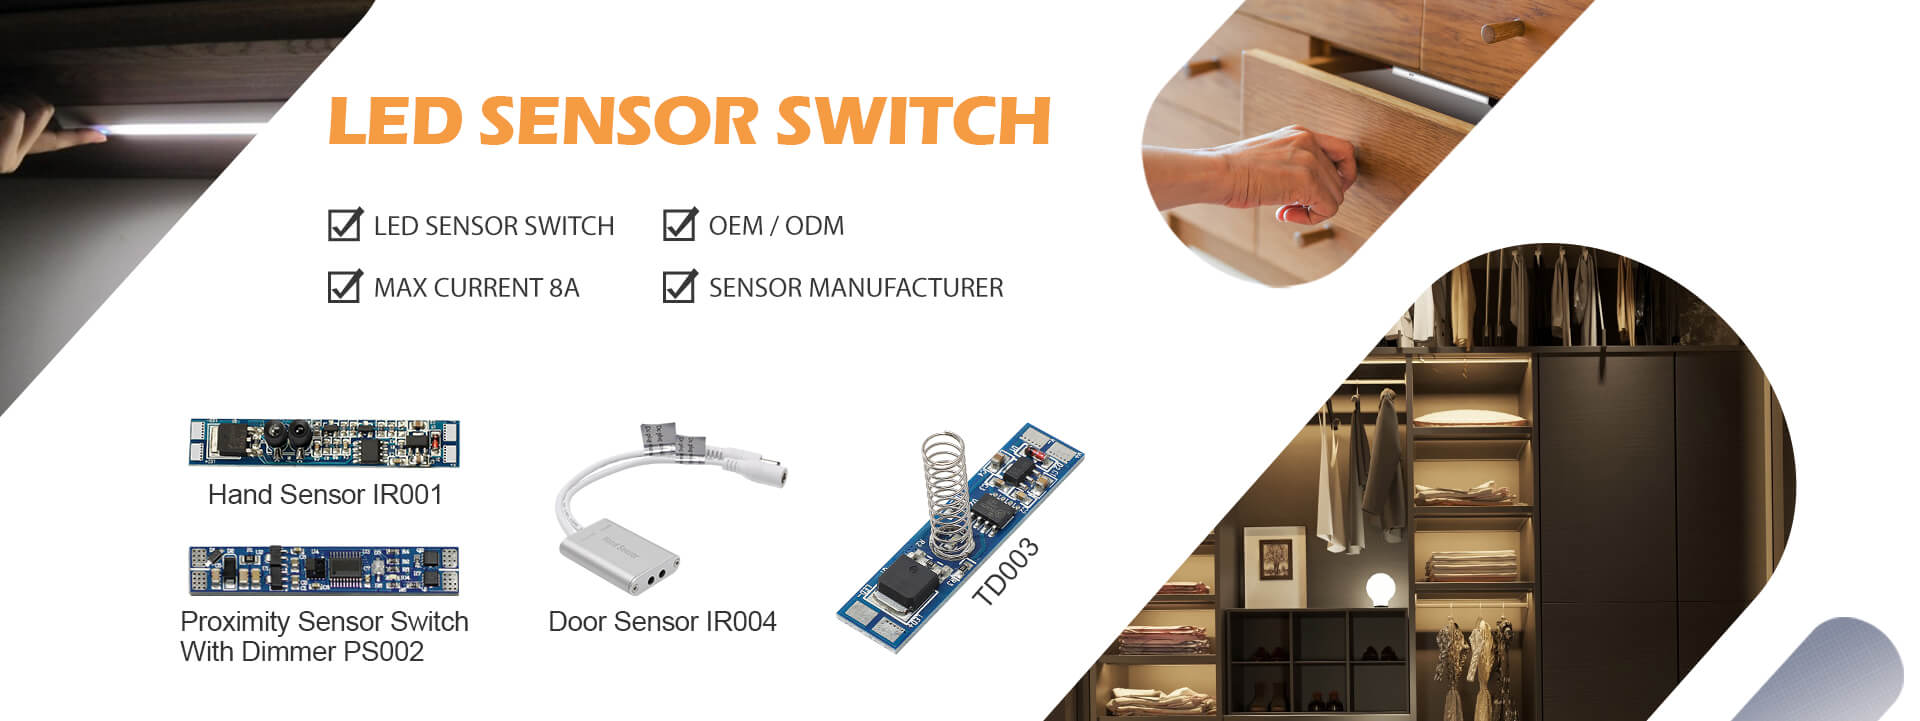 LED Sensor Switch